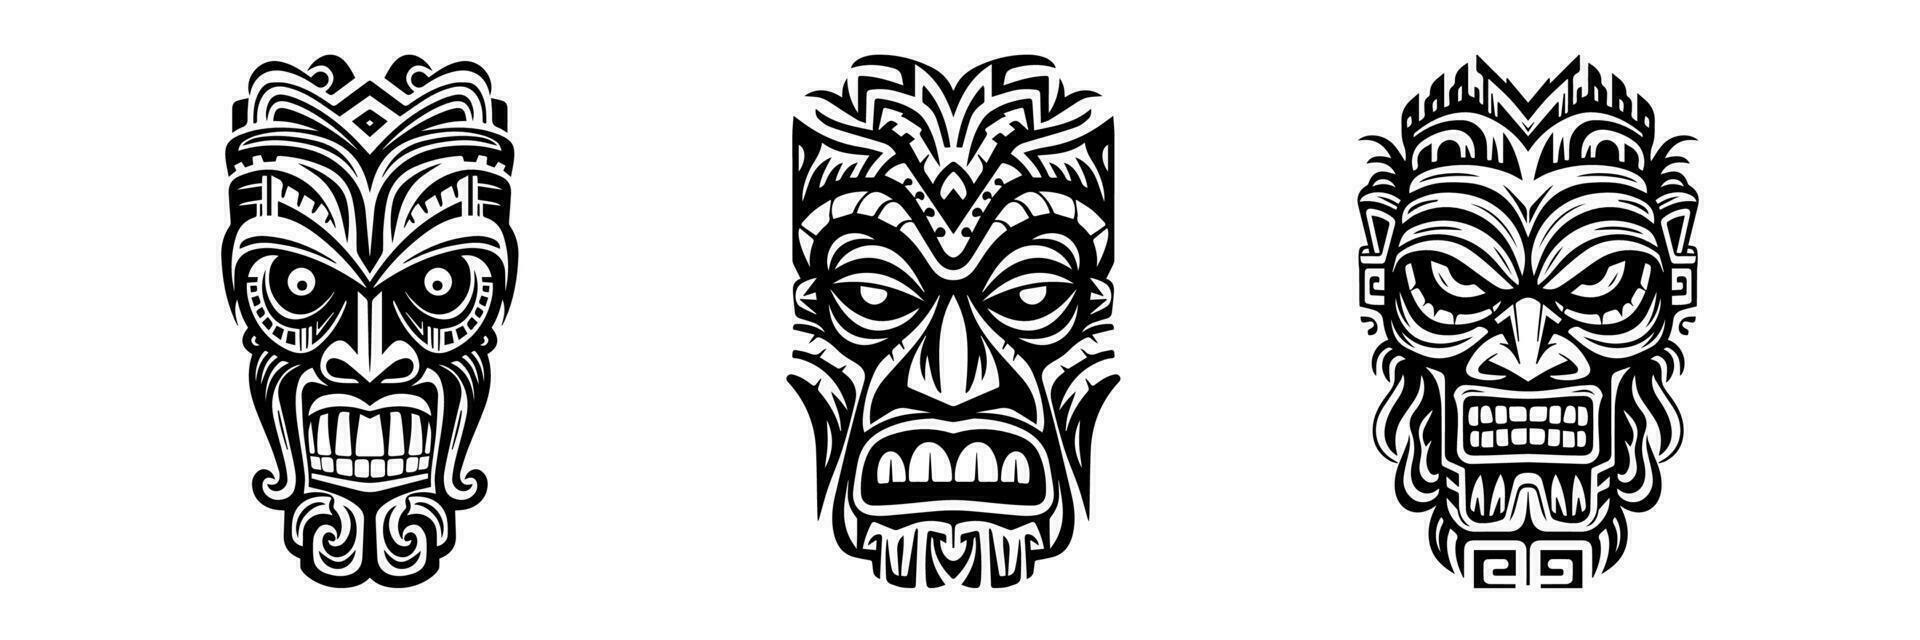 tiki idolen. tribal polynesisch masker, hawaiiaans houten totem. aztec stijl retro tatoeëren, Afrikaanse voodoo eng god ontwerp. tribal-tiki exotisch gezicht. vector reeks